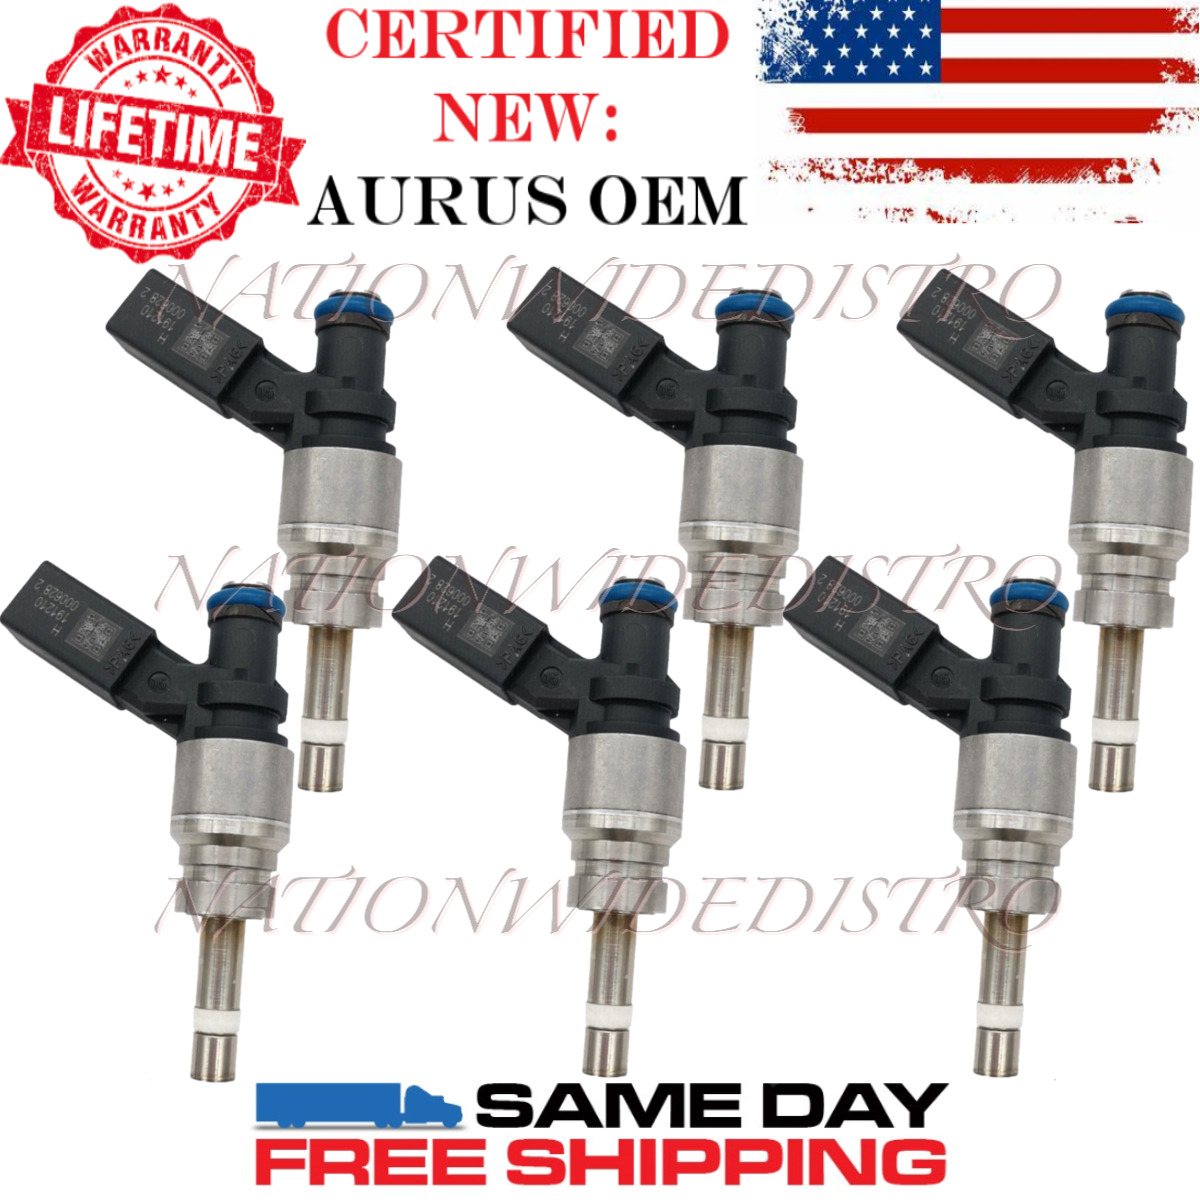 6x OEM NEW AURUS Fuel Injectors for 2008-2012 Audi A4 A5 Quattro A6 Q5 3.2L V6